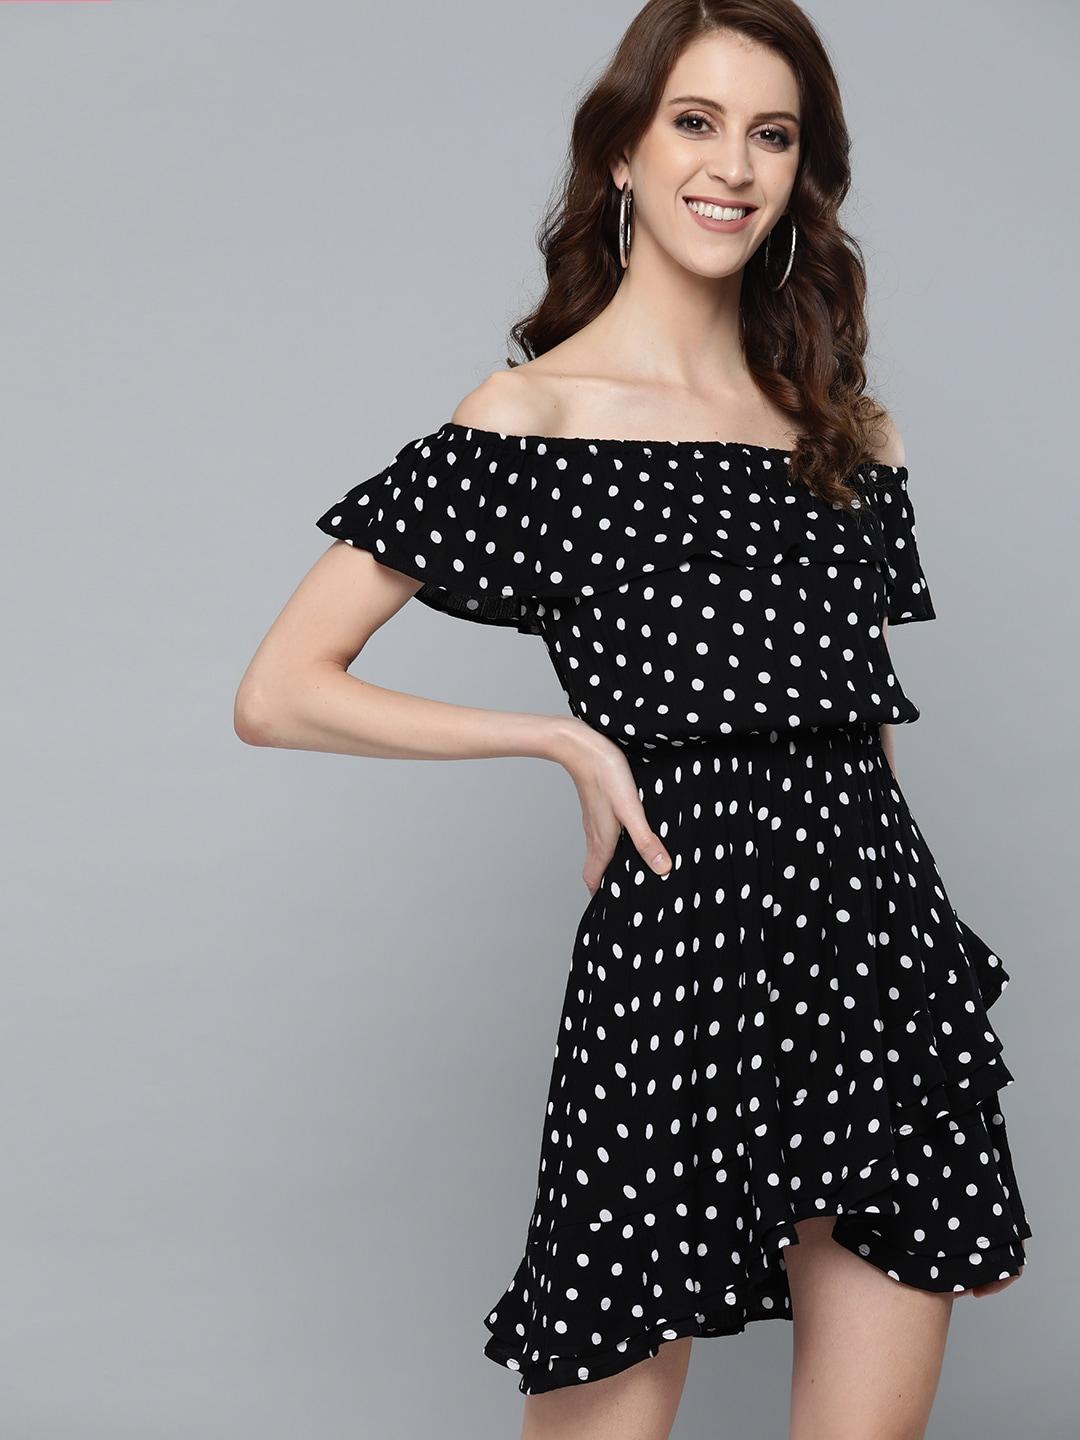 here&now women black & white polka dots print a-line dress